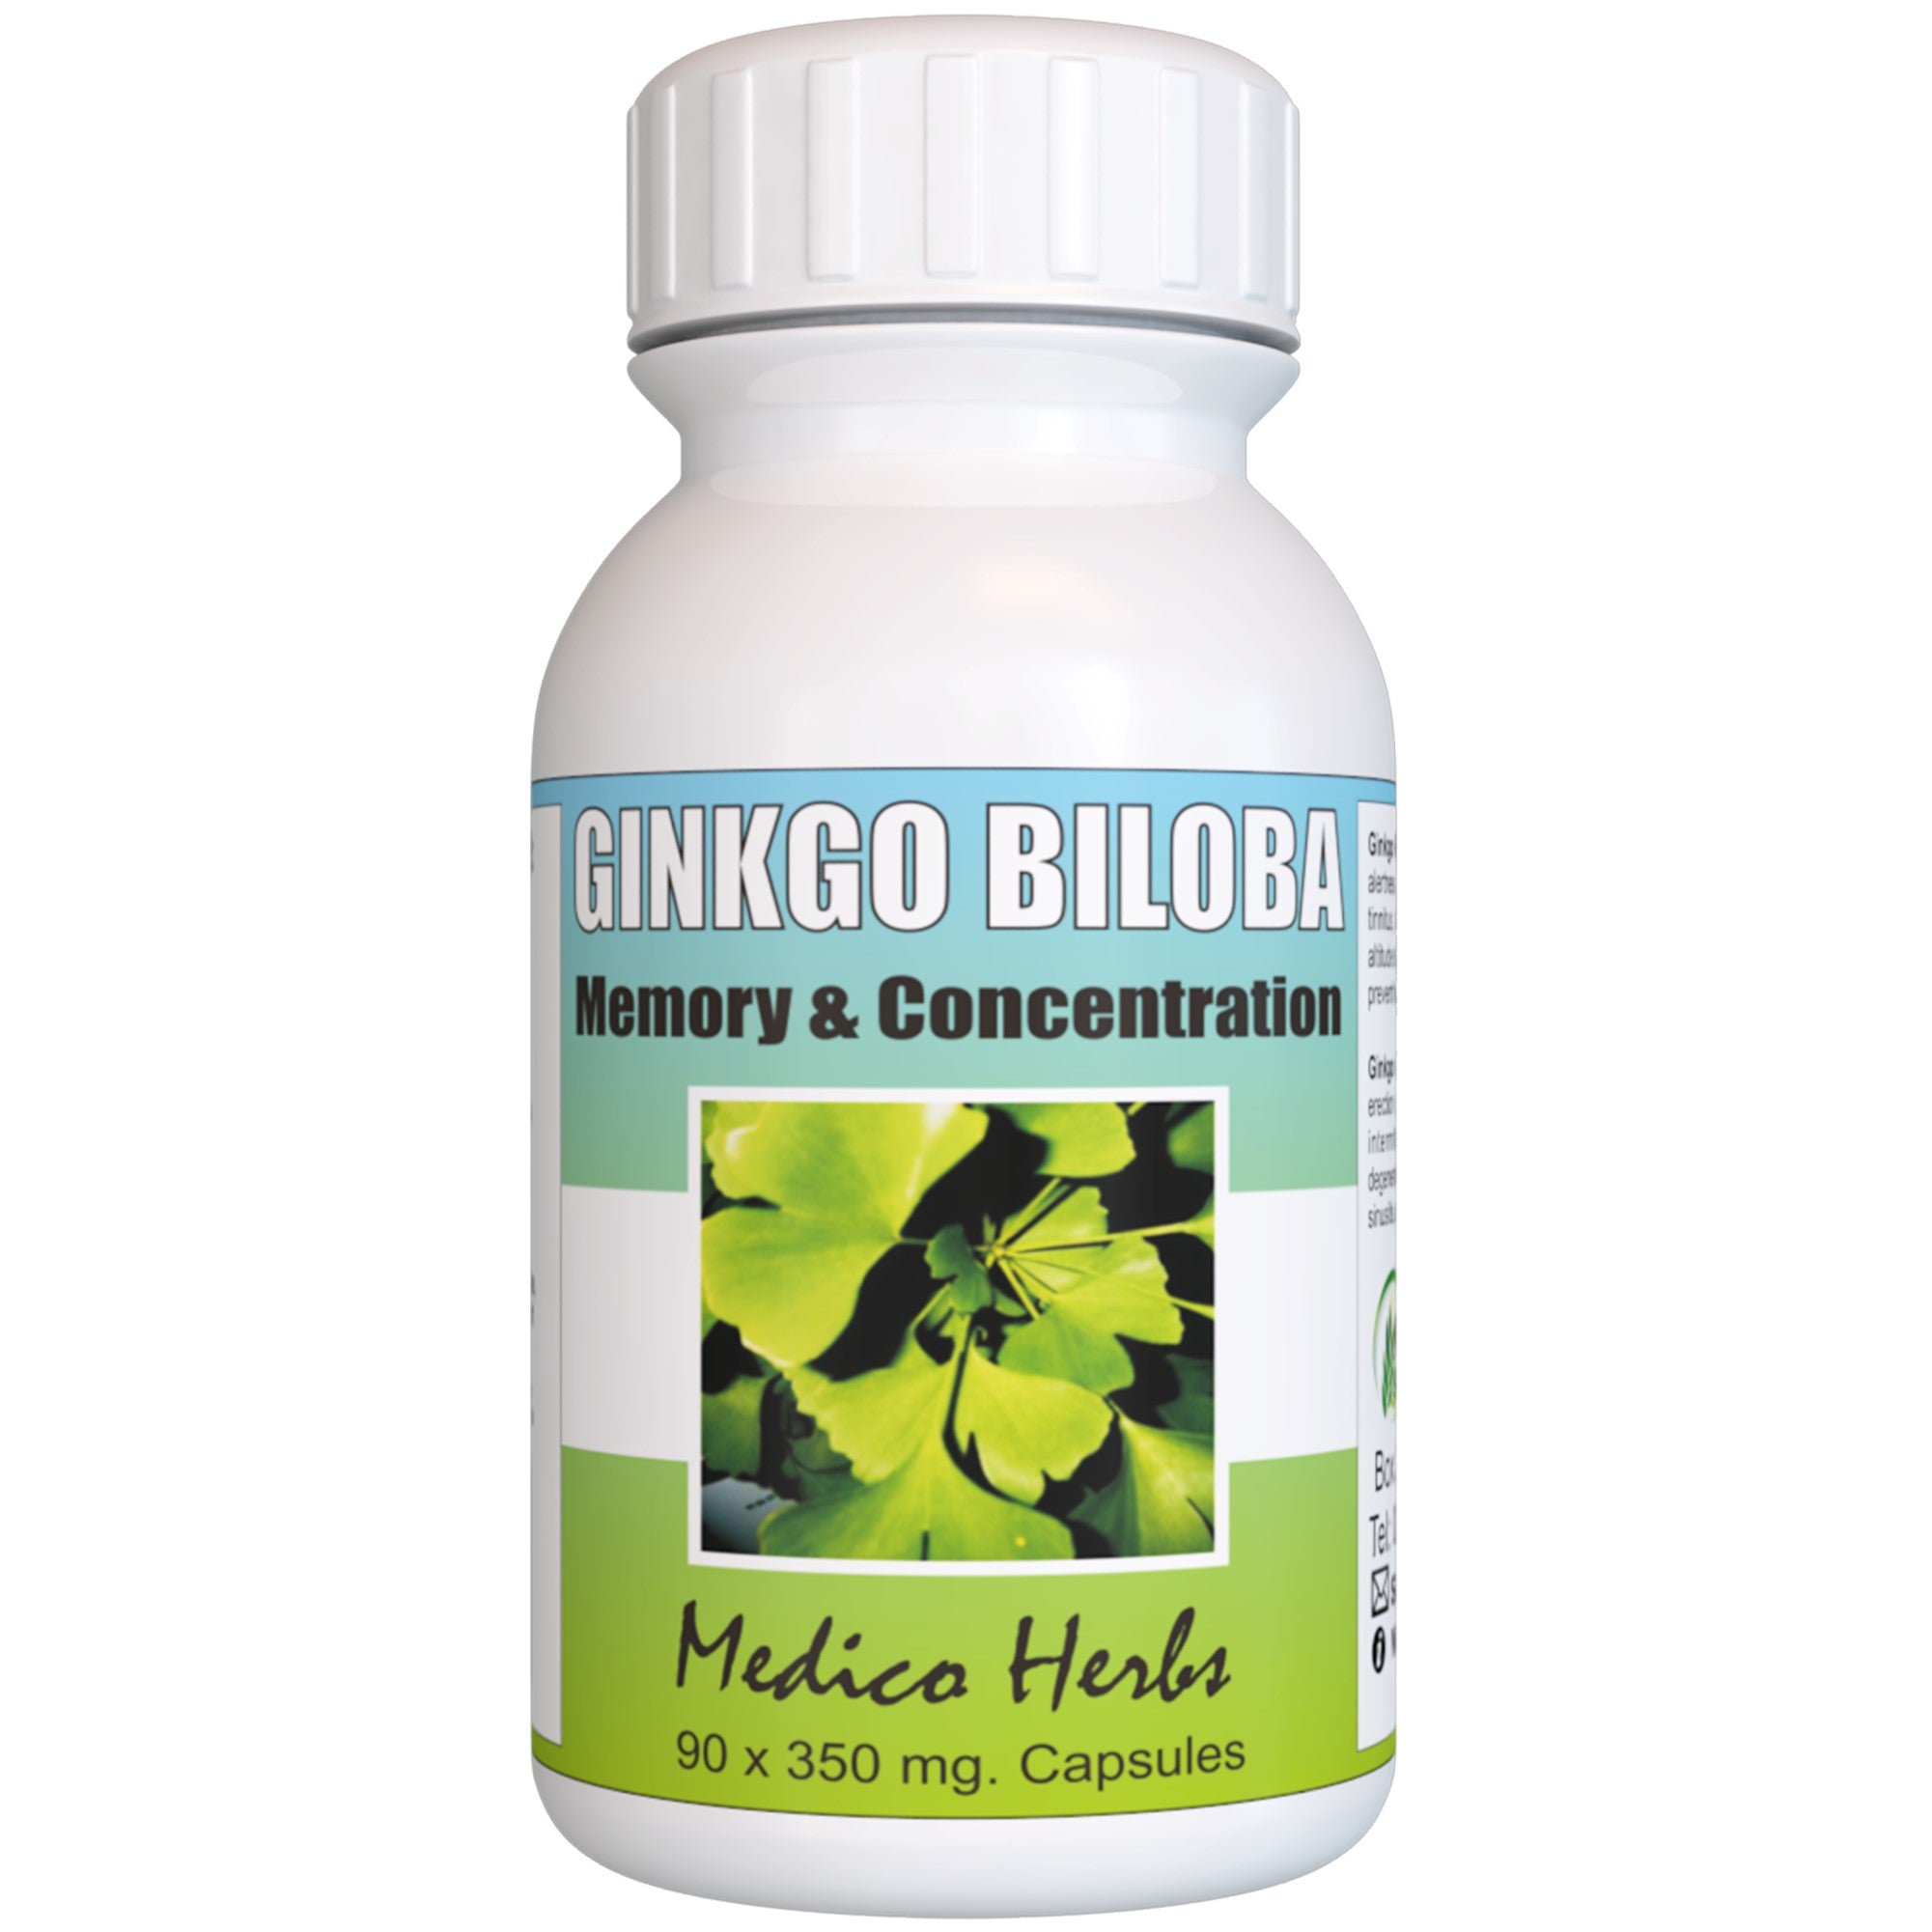 Ginkgo Biloba - Improves circulation to help reduce memory loss  100% Natural - 60x350mg capsules